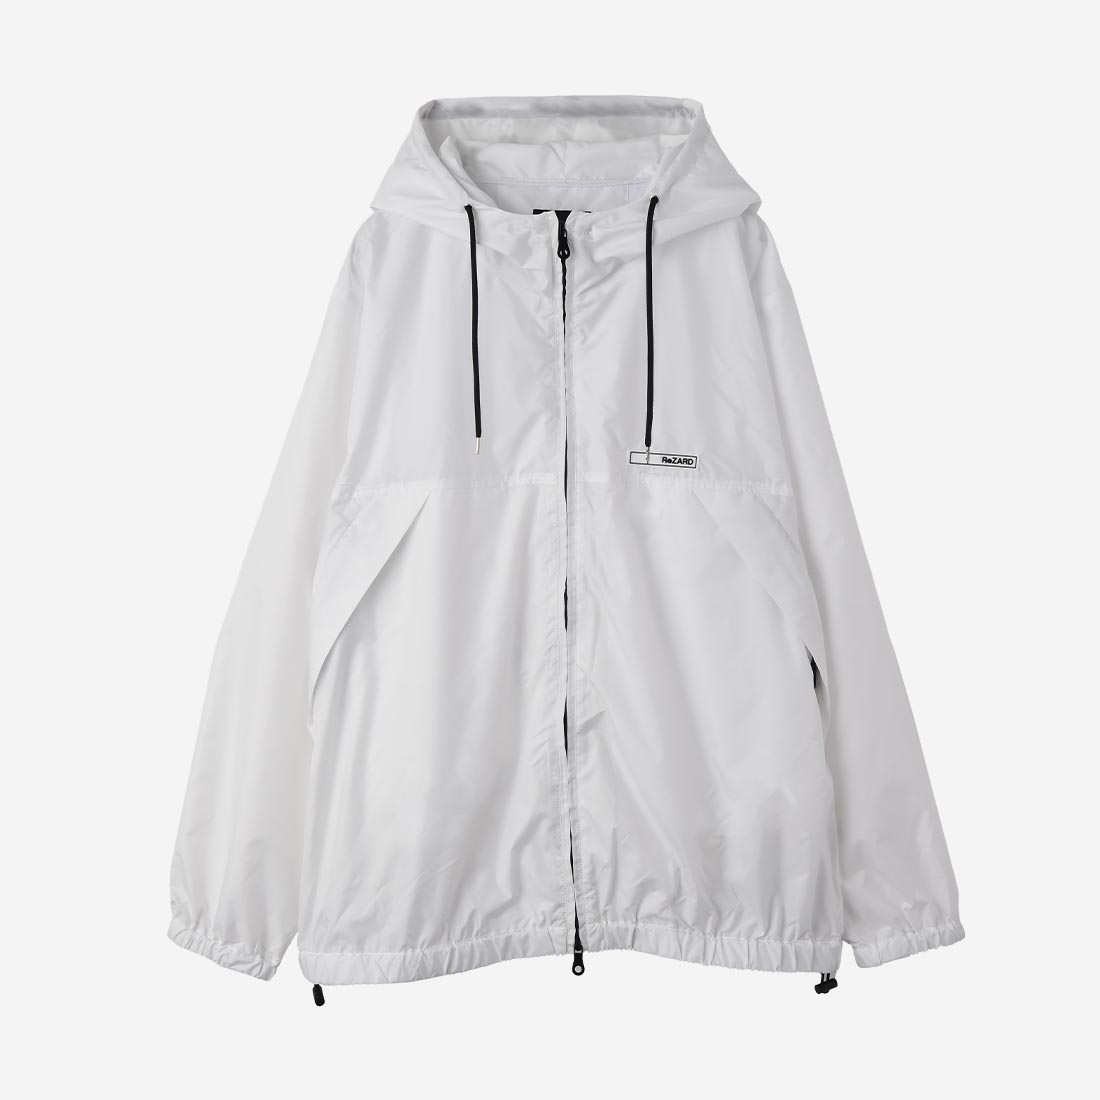 【ReZARD】Wappen Hooded Jacket(WHITE)